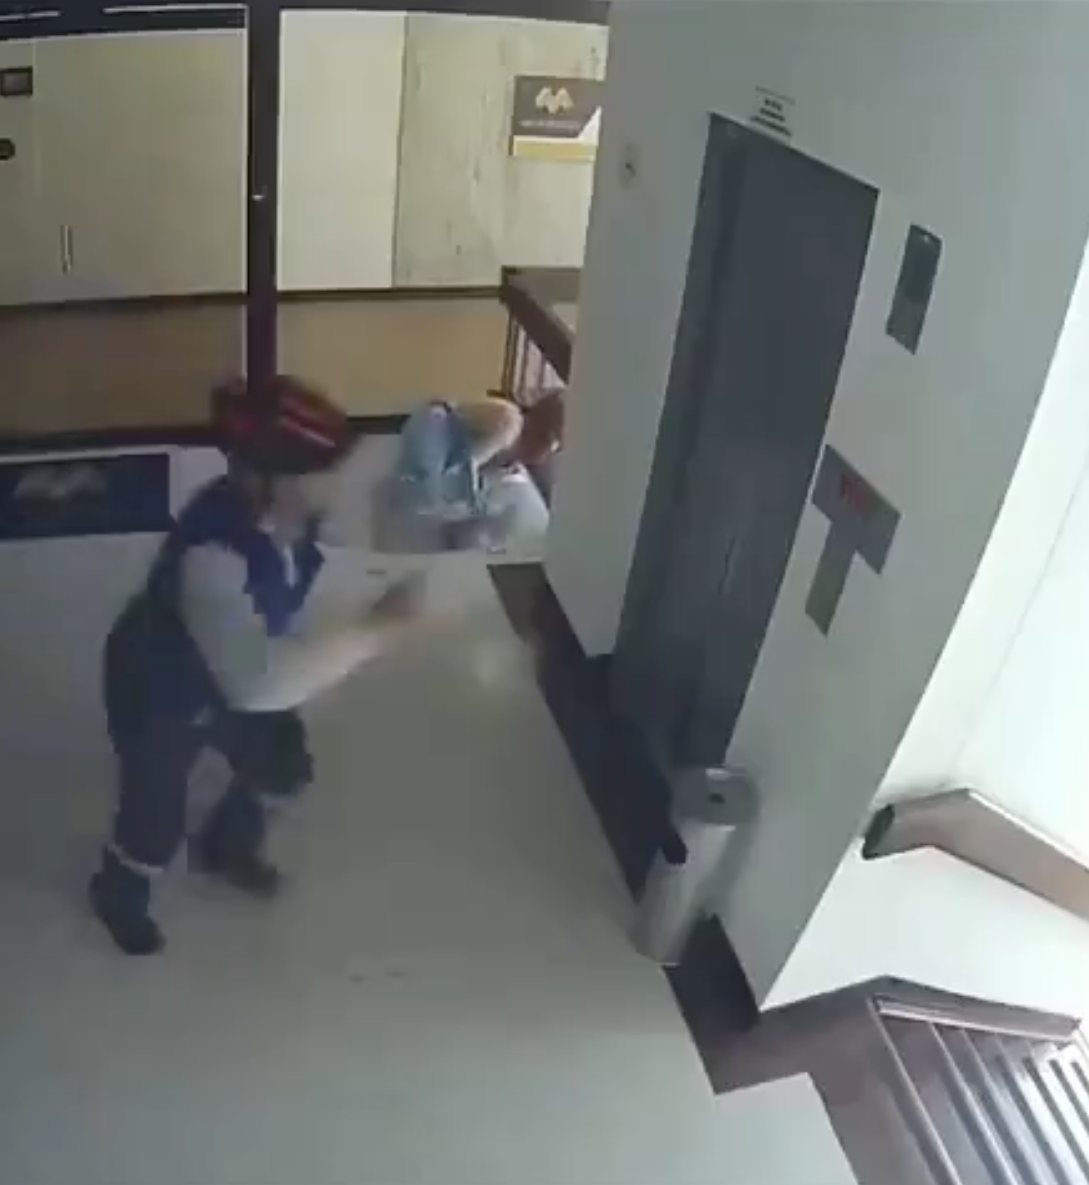 Die Mama versucht, ihren Sohn zu fangen, während ein anderer Mann in die untere Etage rennt, um ihn zu fangen. | Quelle: Instagram.com/fatherly